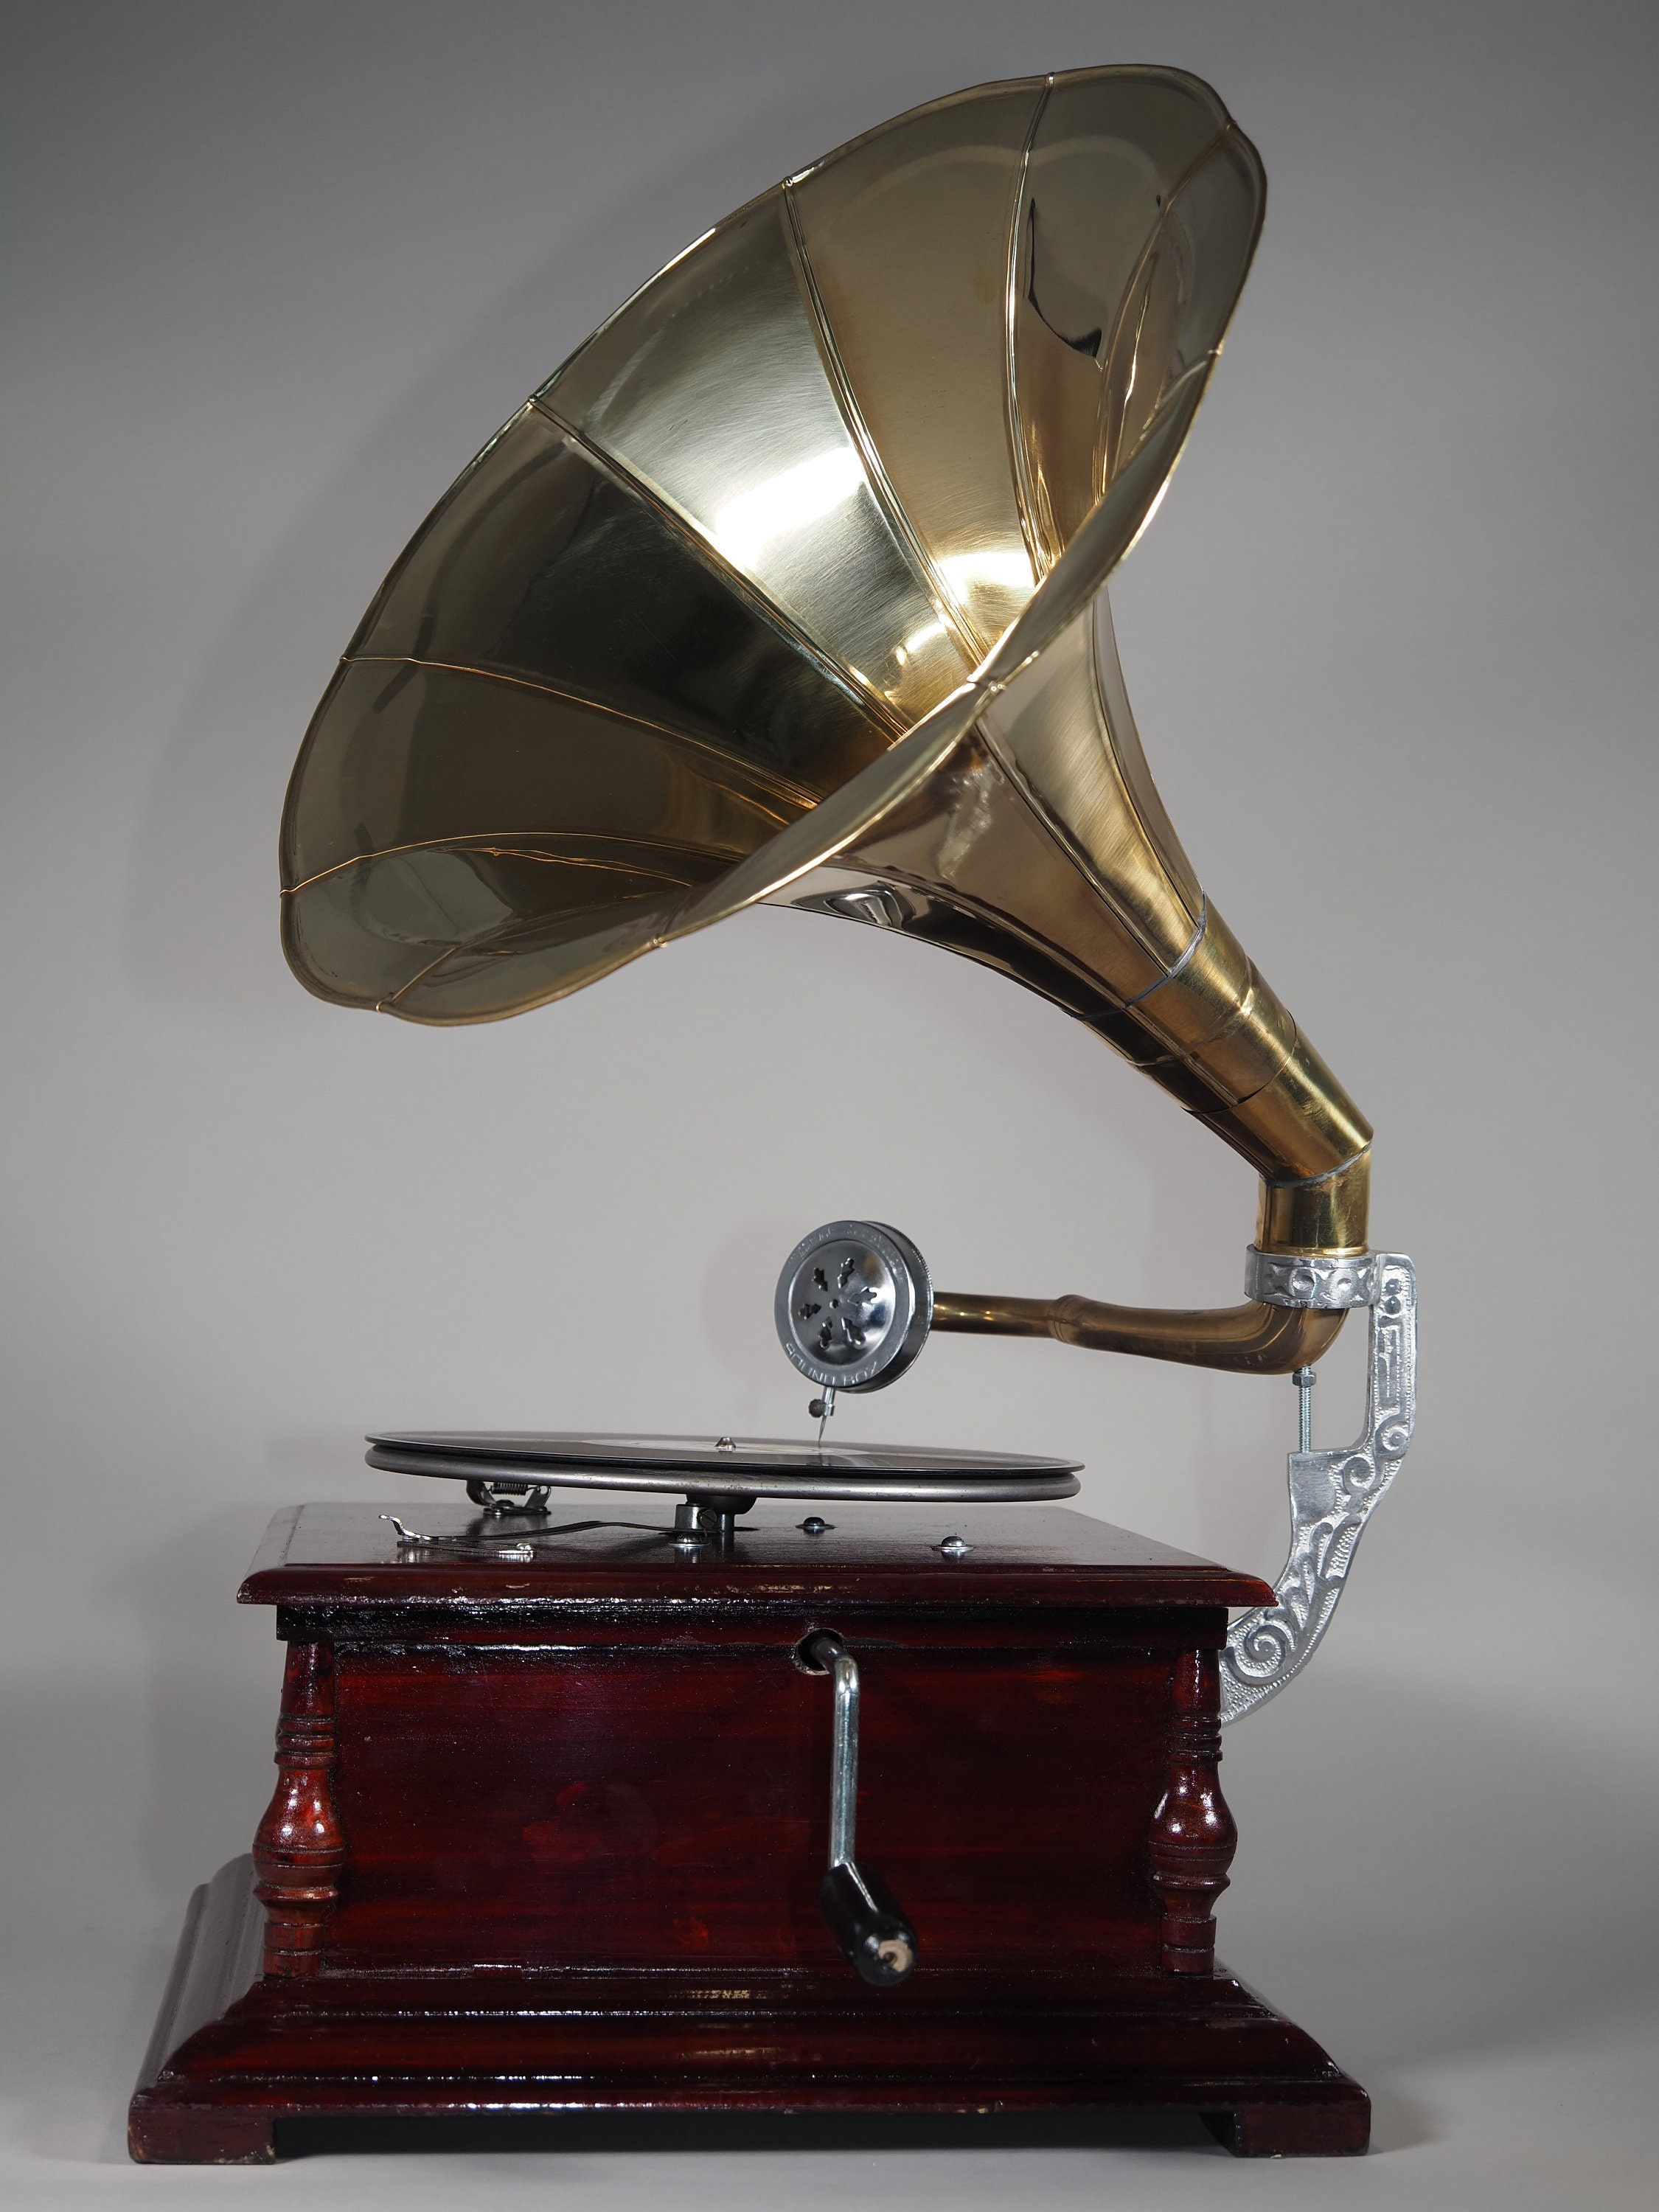 Magnifique Phonographe Vintage En Argent. Gramophone Rétro Avec